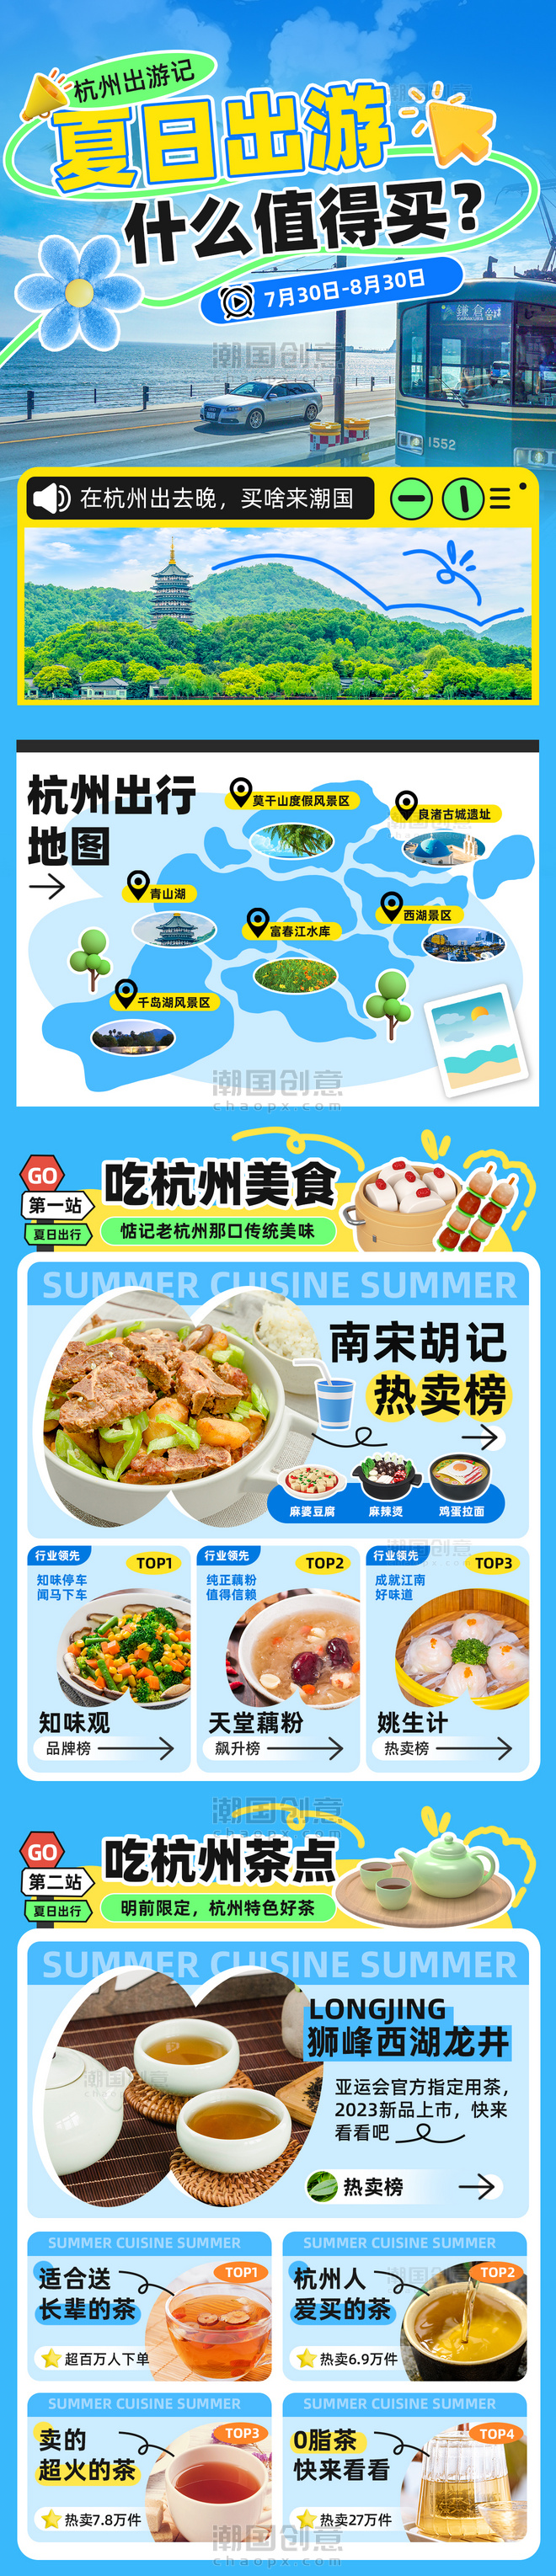 夏季出行城市吃喝玩乐促销宣传长图设计